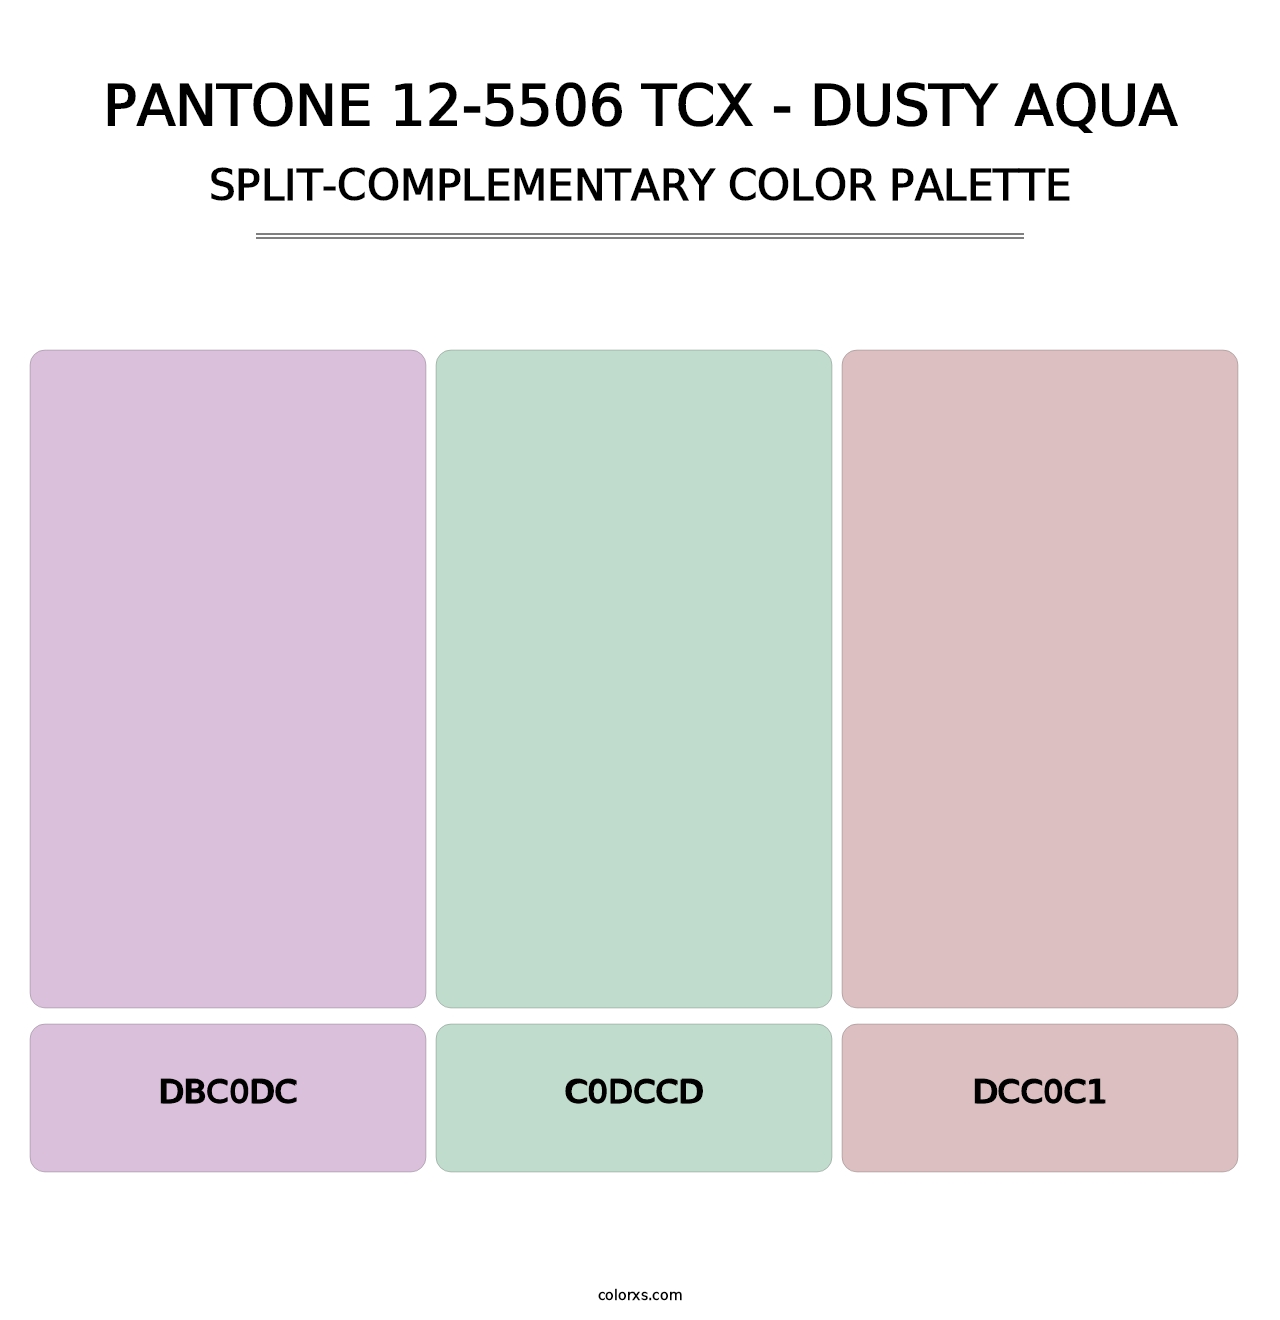 PANTONE 12-5506 TCX - Dusty Aqua - Split-Complementary Color Palette